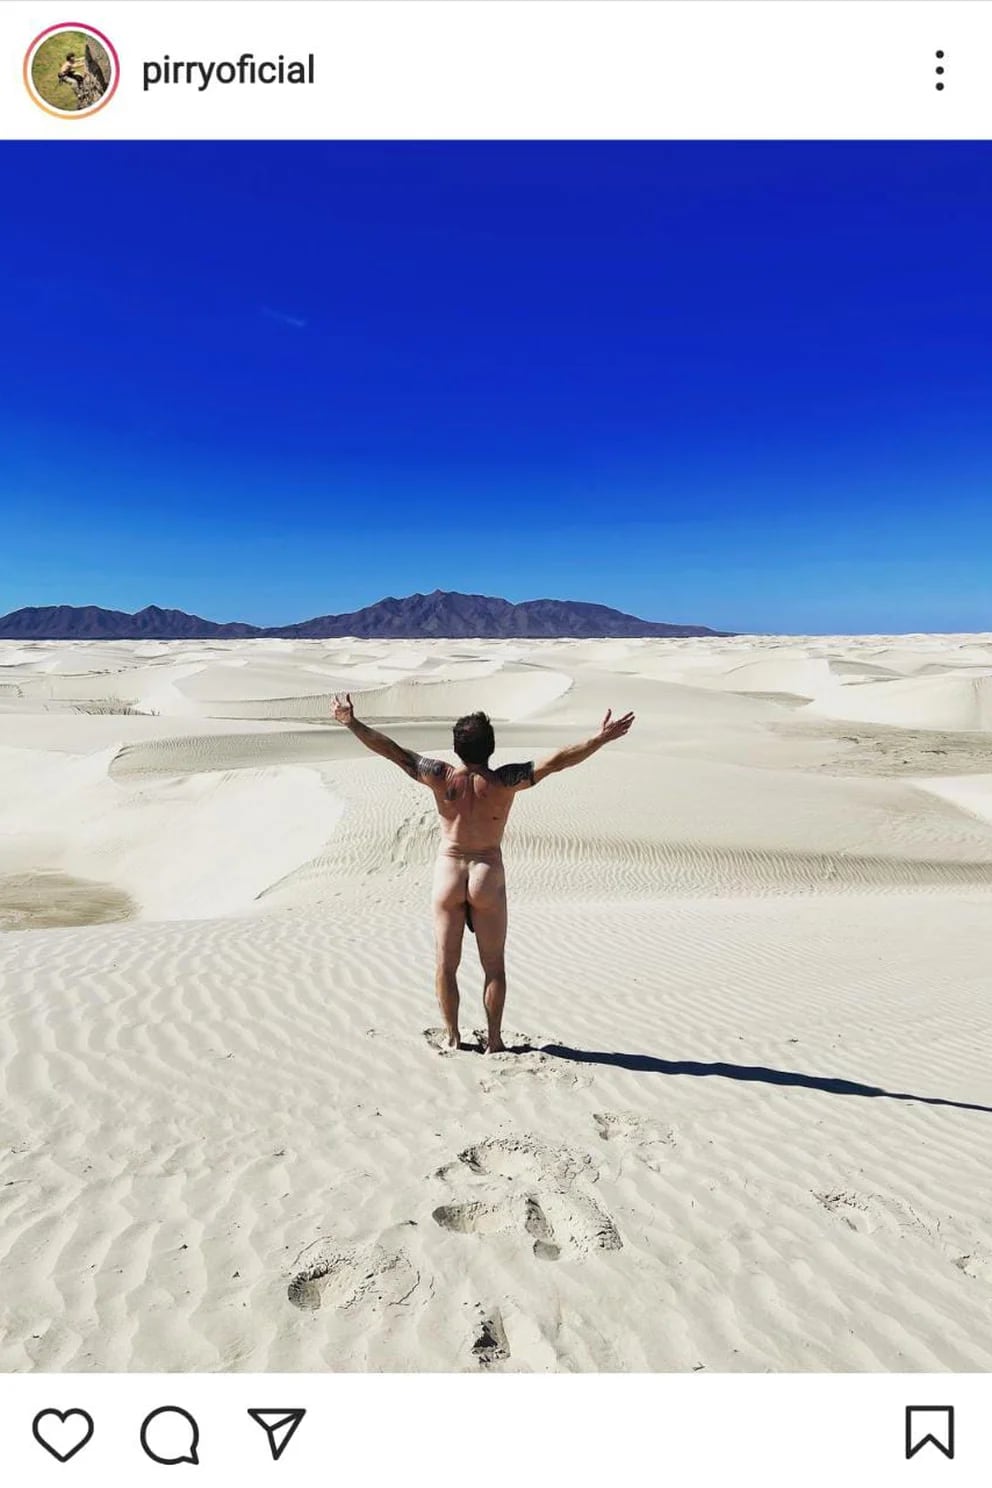 Desnudo de Pirry causó sensación en redes sociales: “Tiembla el Tino” -  Infobae